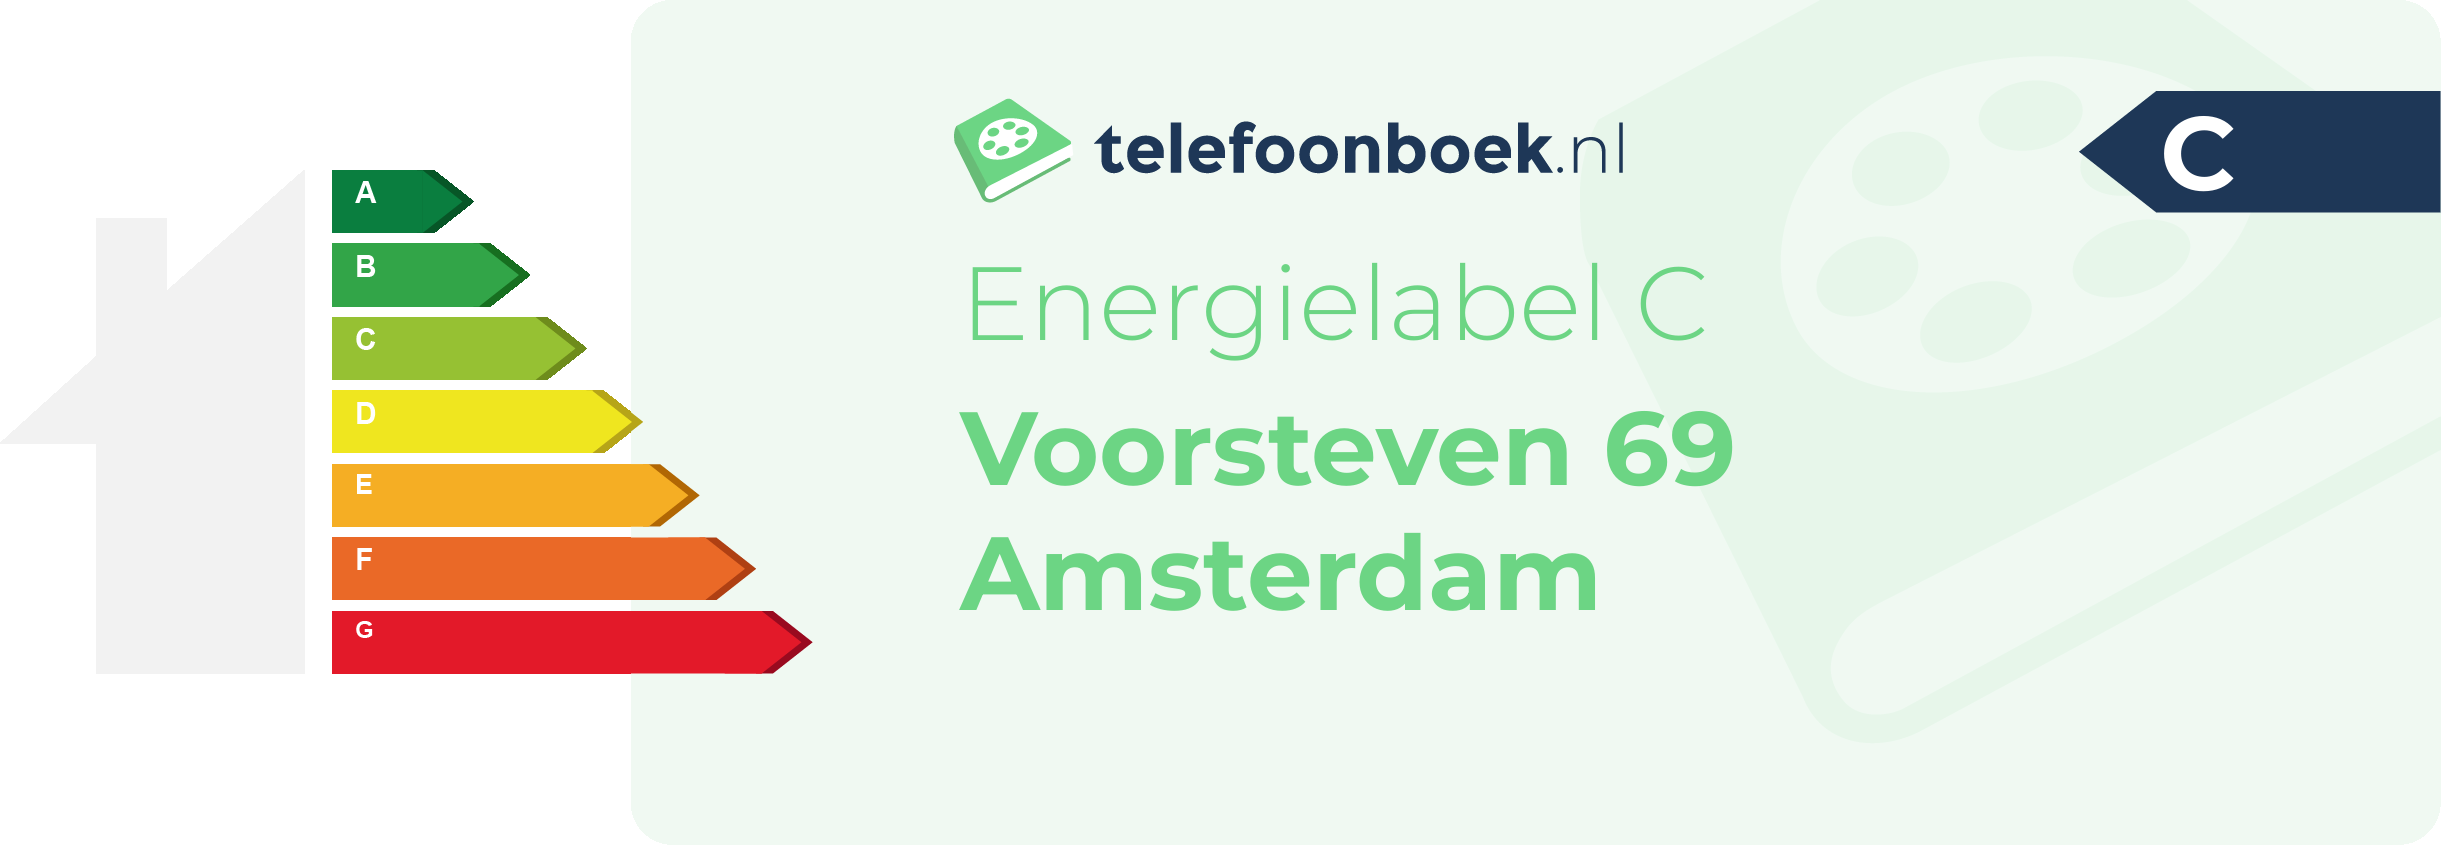 Energielabel Voorsteven 69 Amsterdam